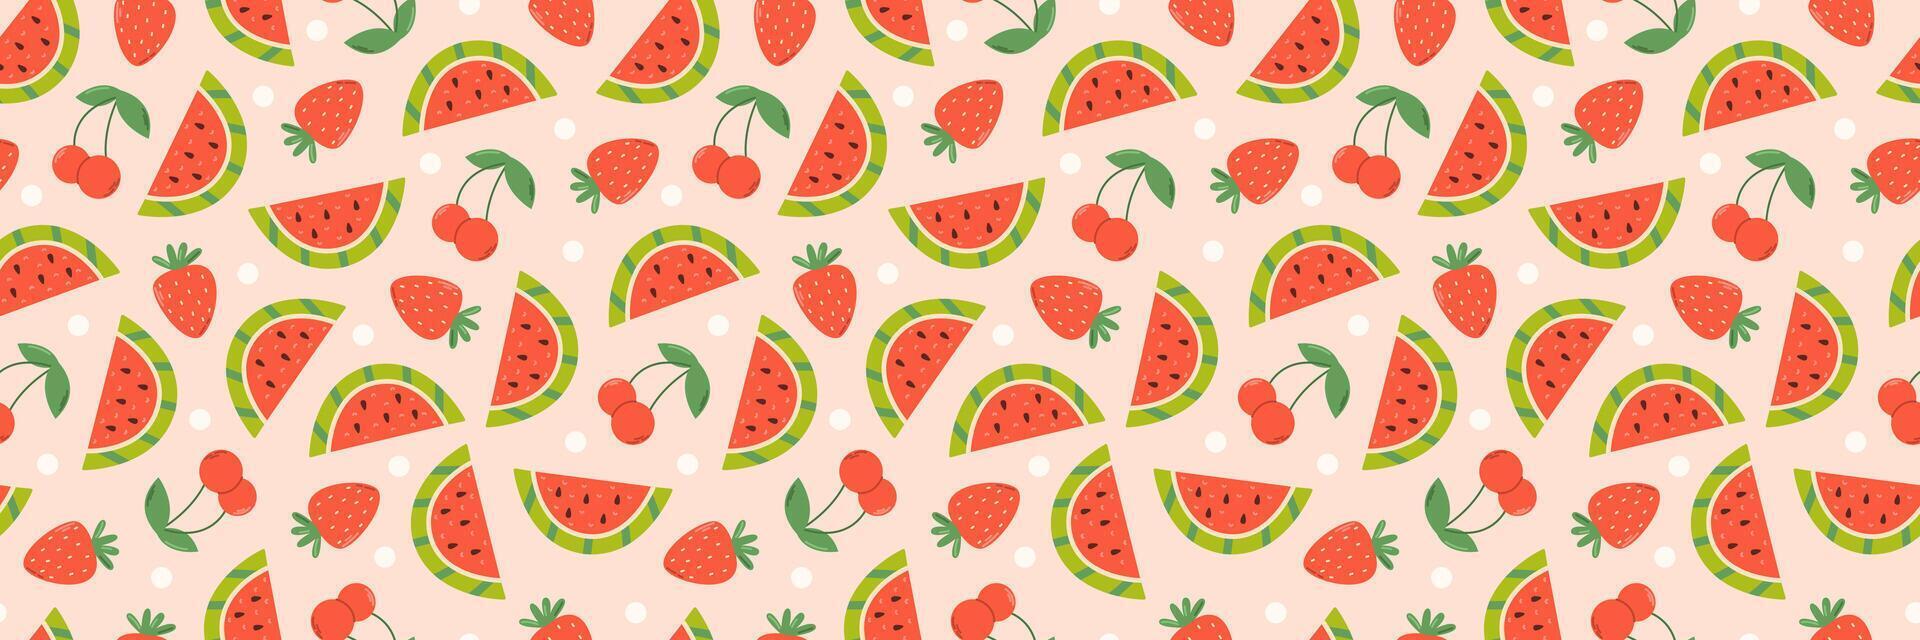 Wassermelone Scheiben, Erdbeere und Kirsche. Sommer- nahtlos Muster vektor